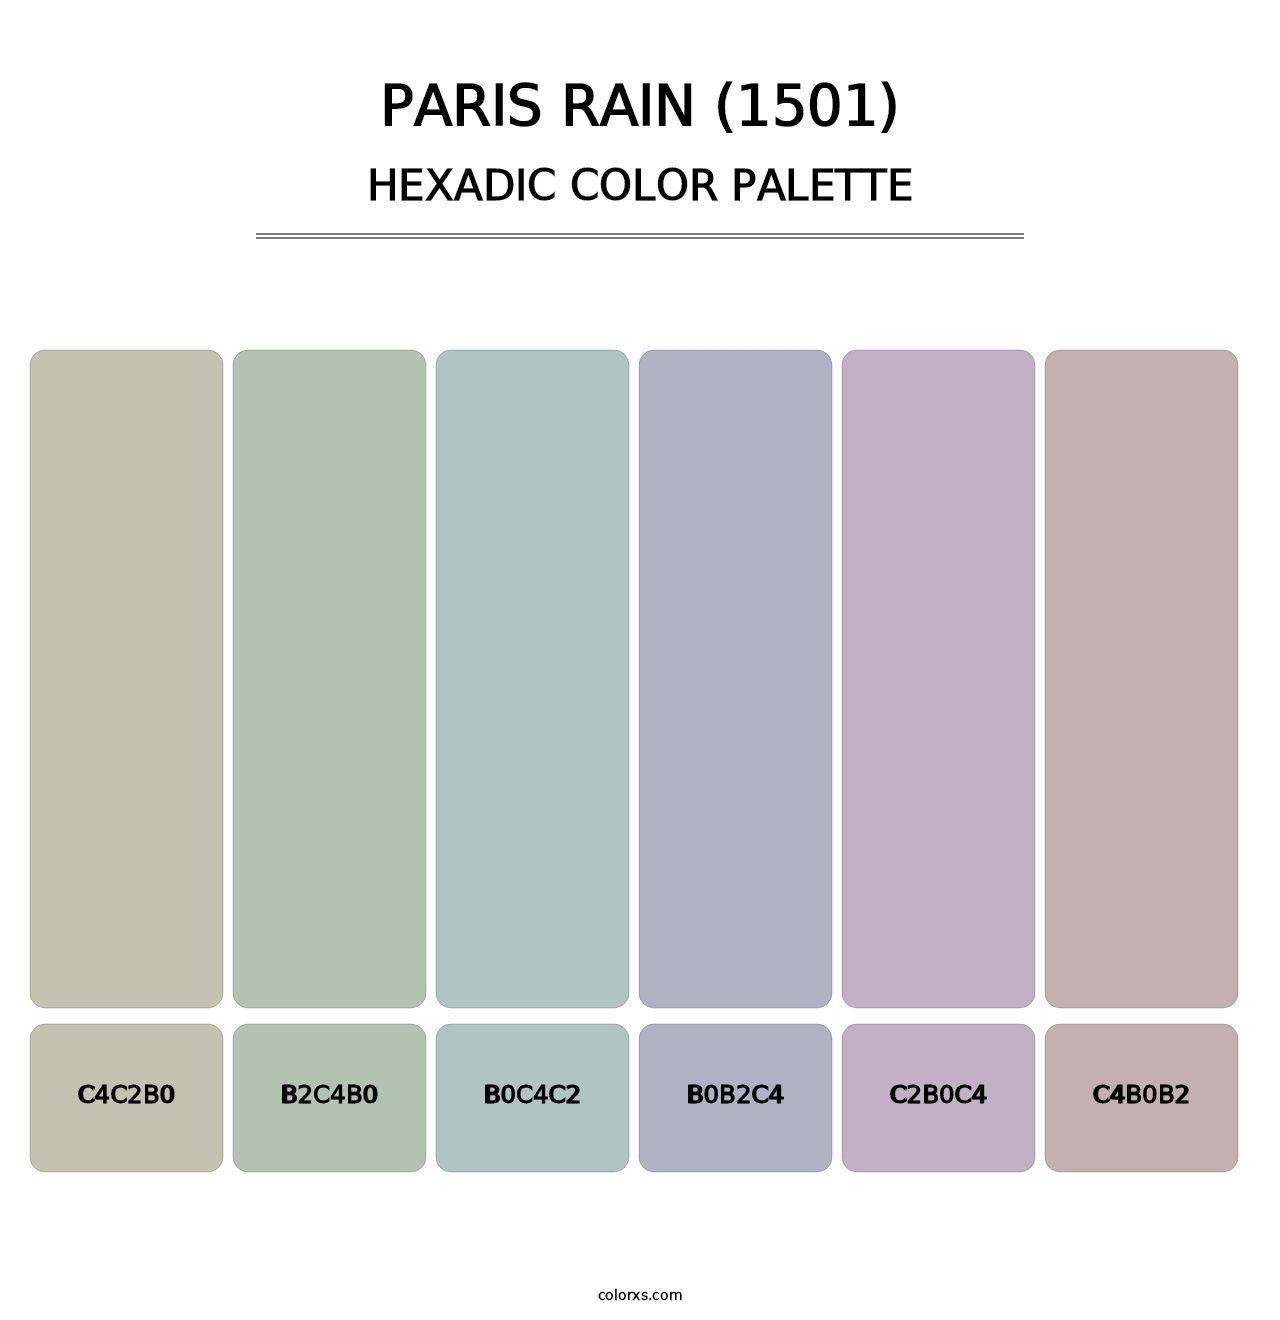 Paris Rain (1501) - Hexadic Color Palette